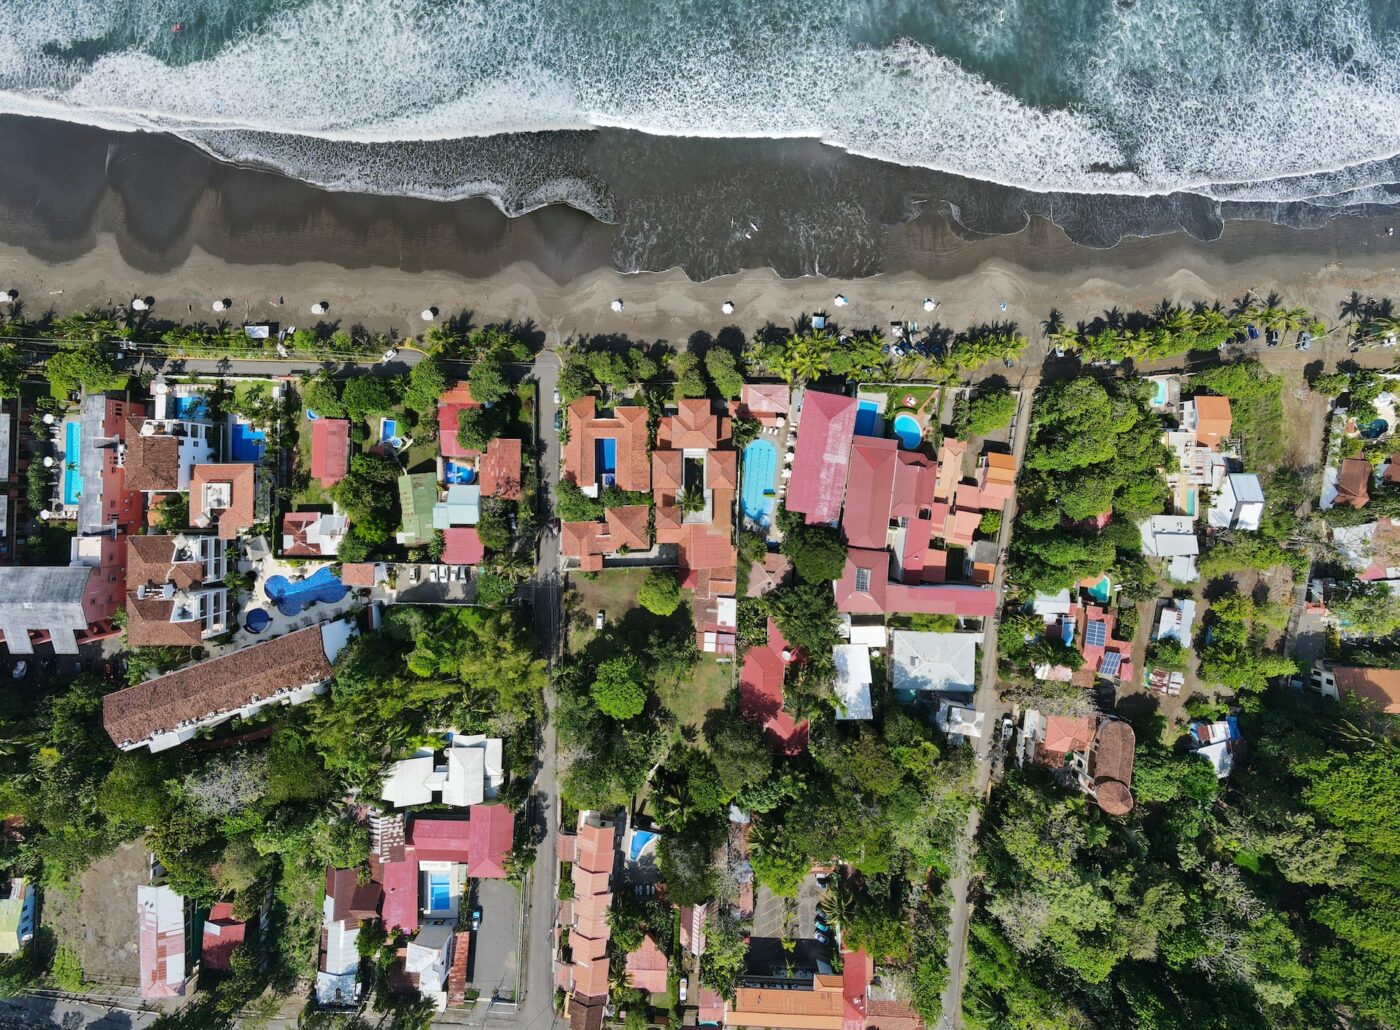 Jaco Beach in Costa Rica